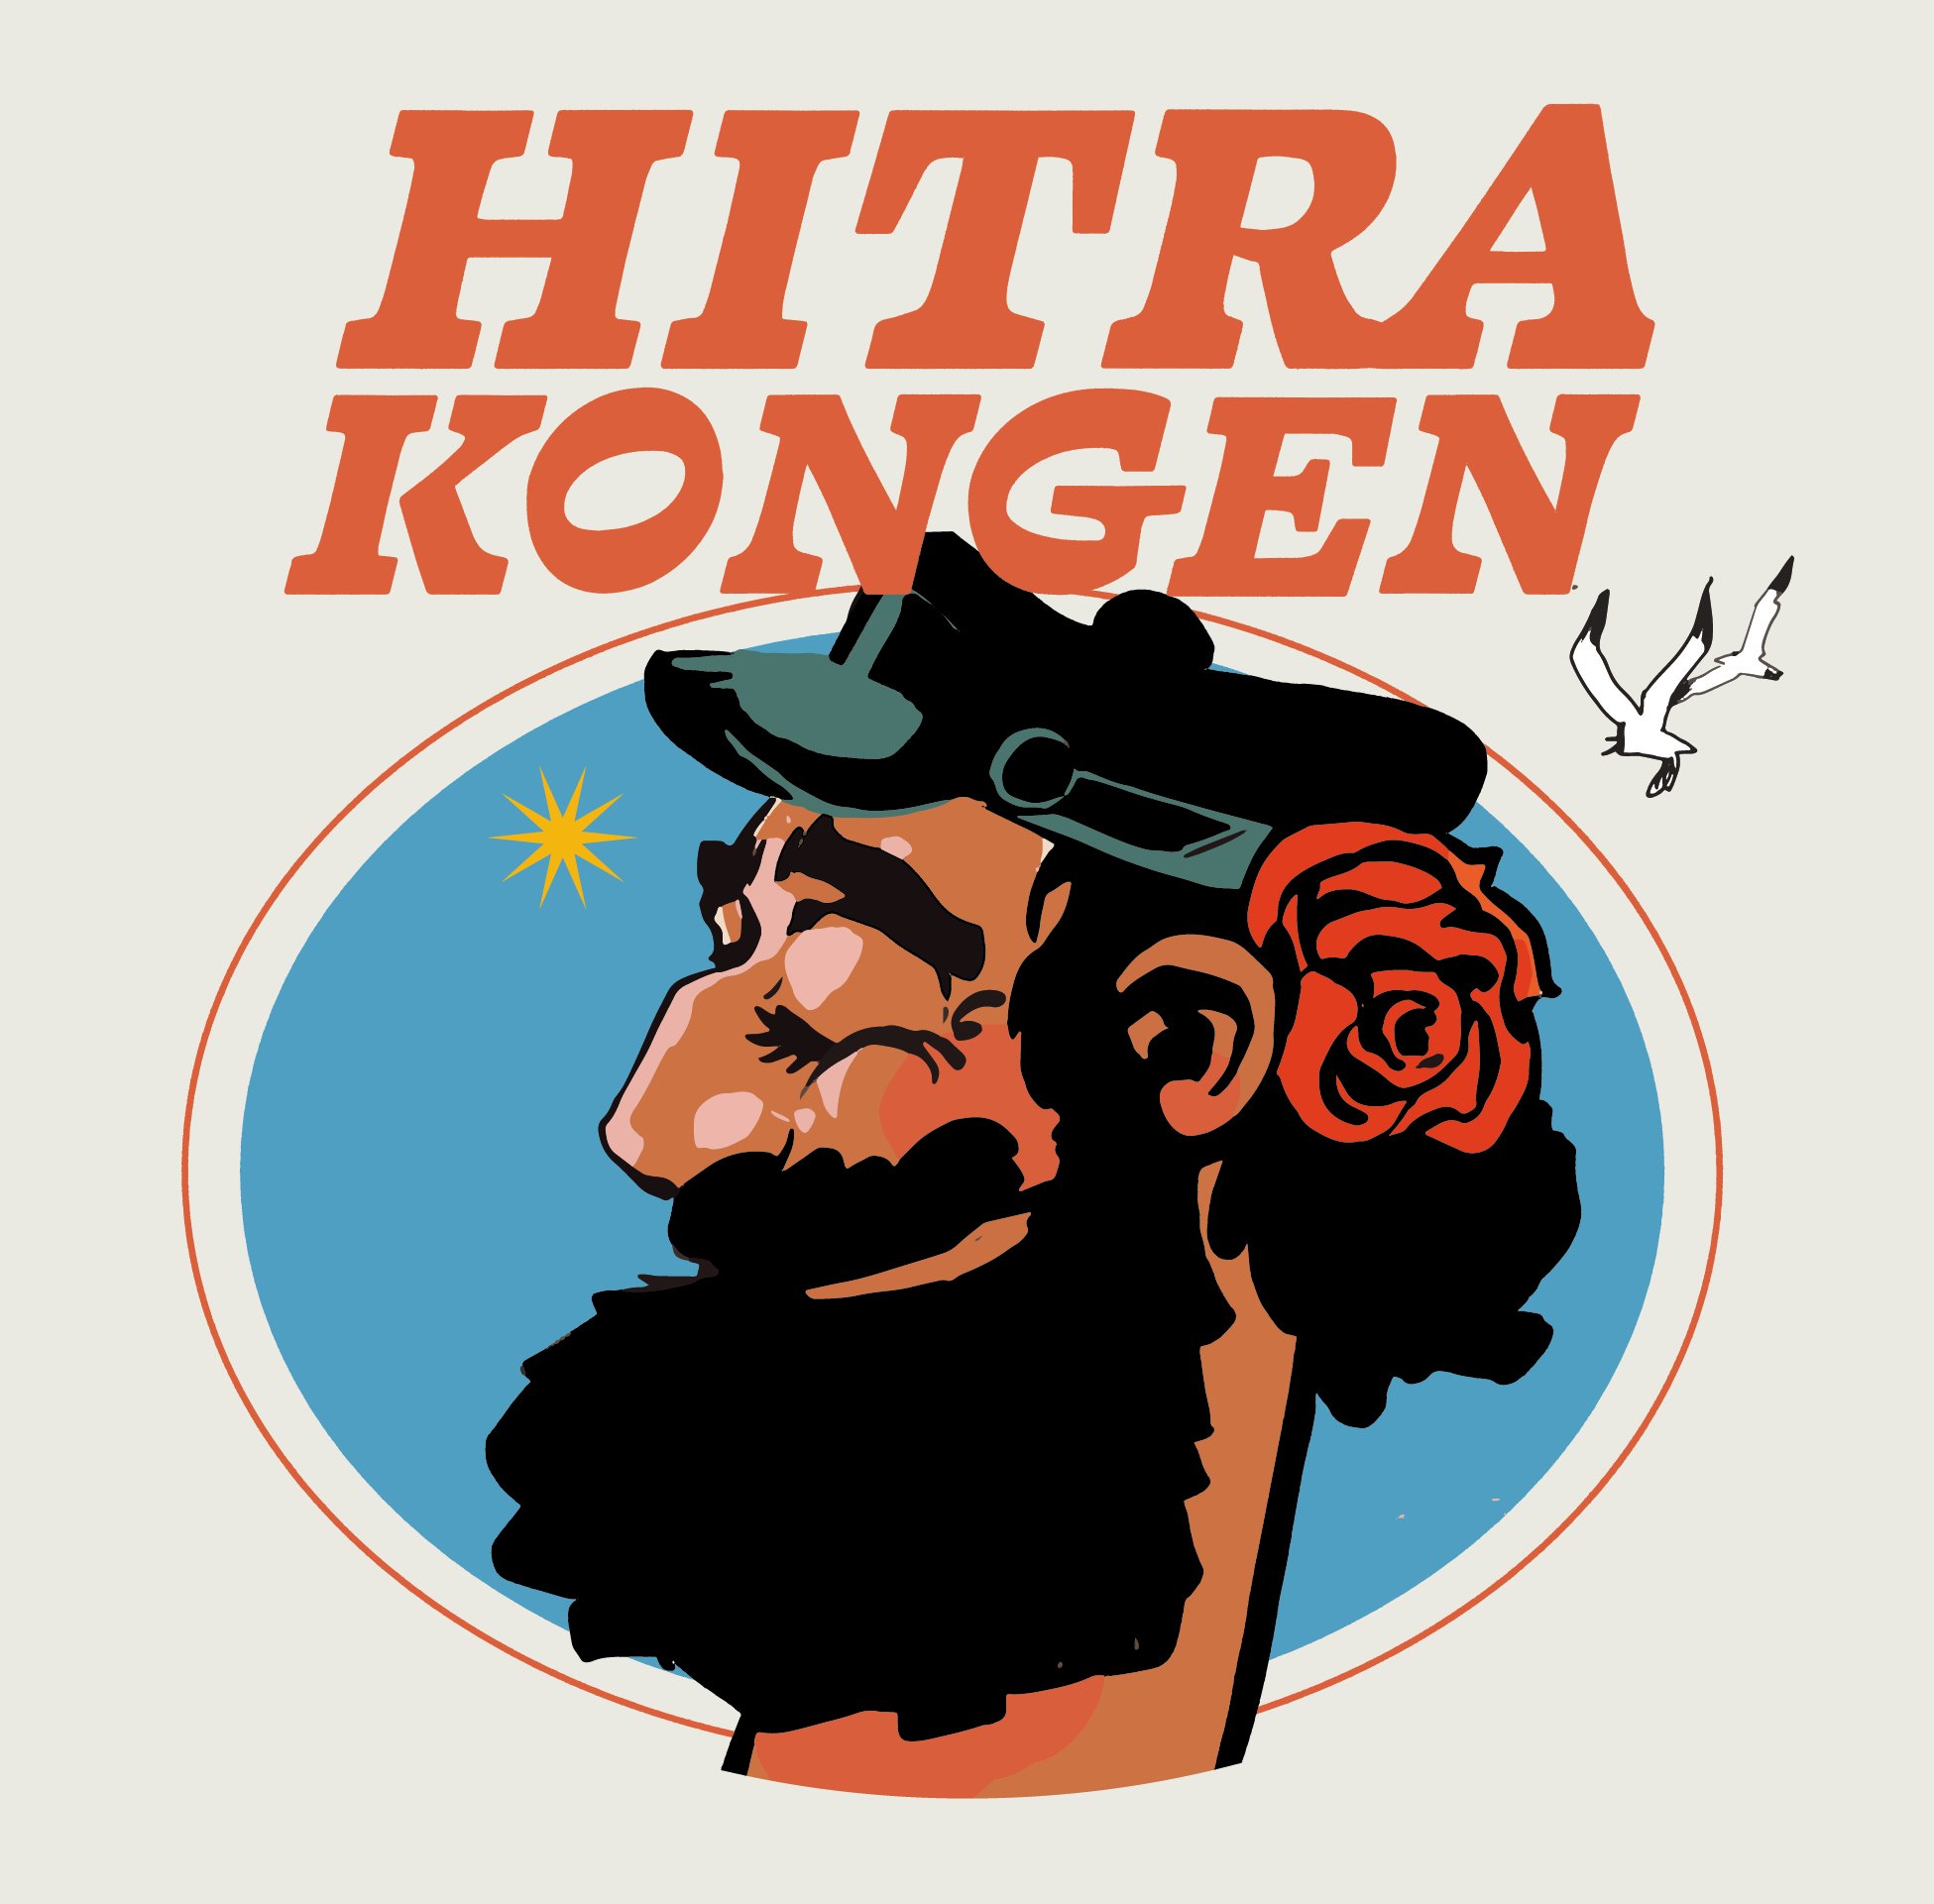 hitrakongen-coverbilde Ole Kristian Øye.jpg